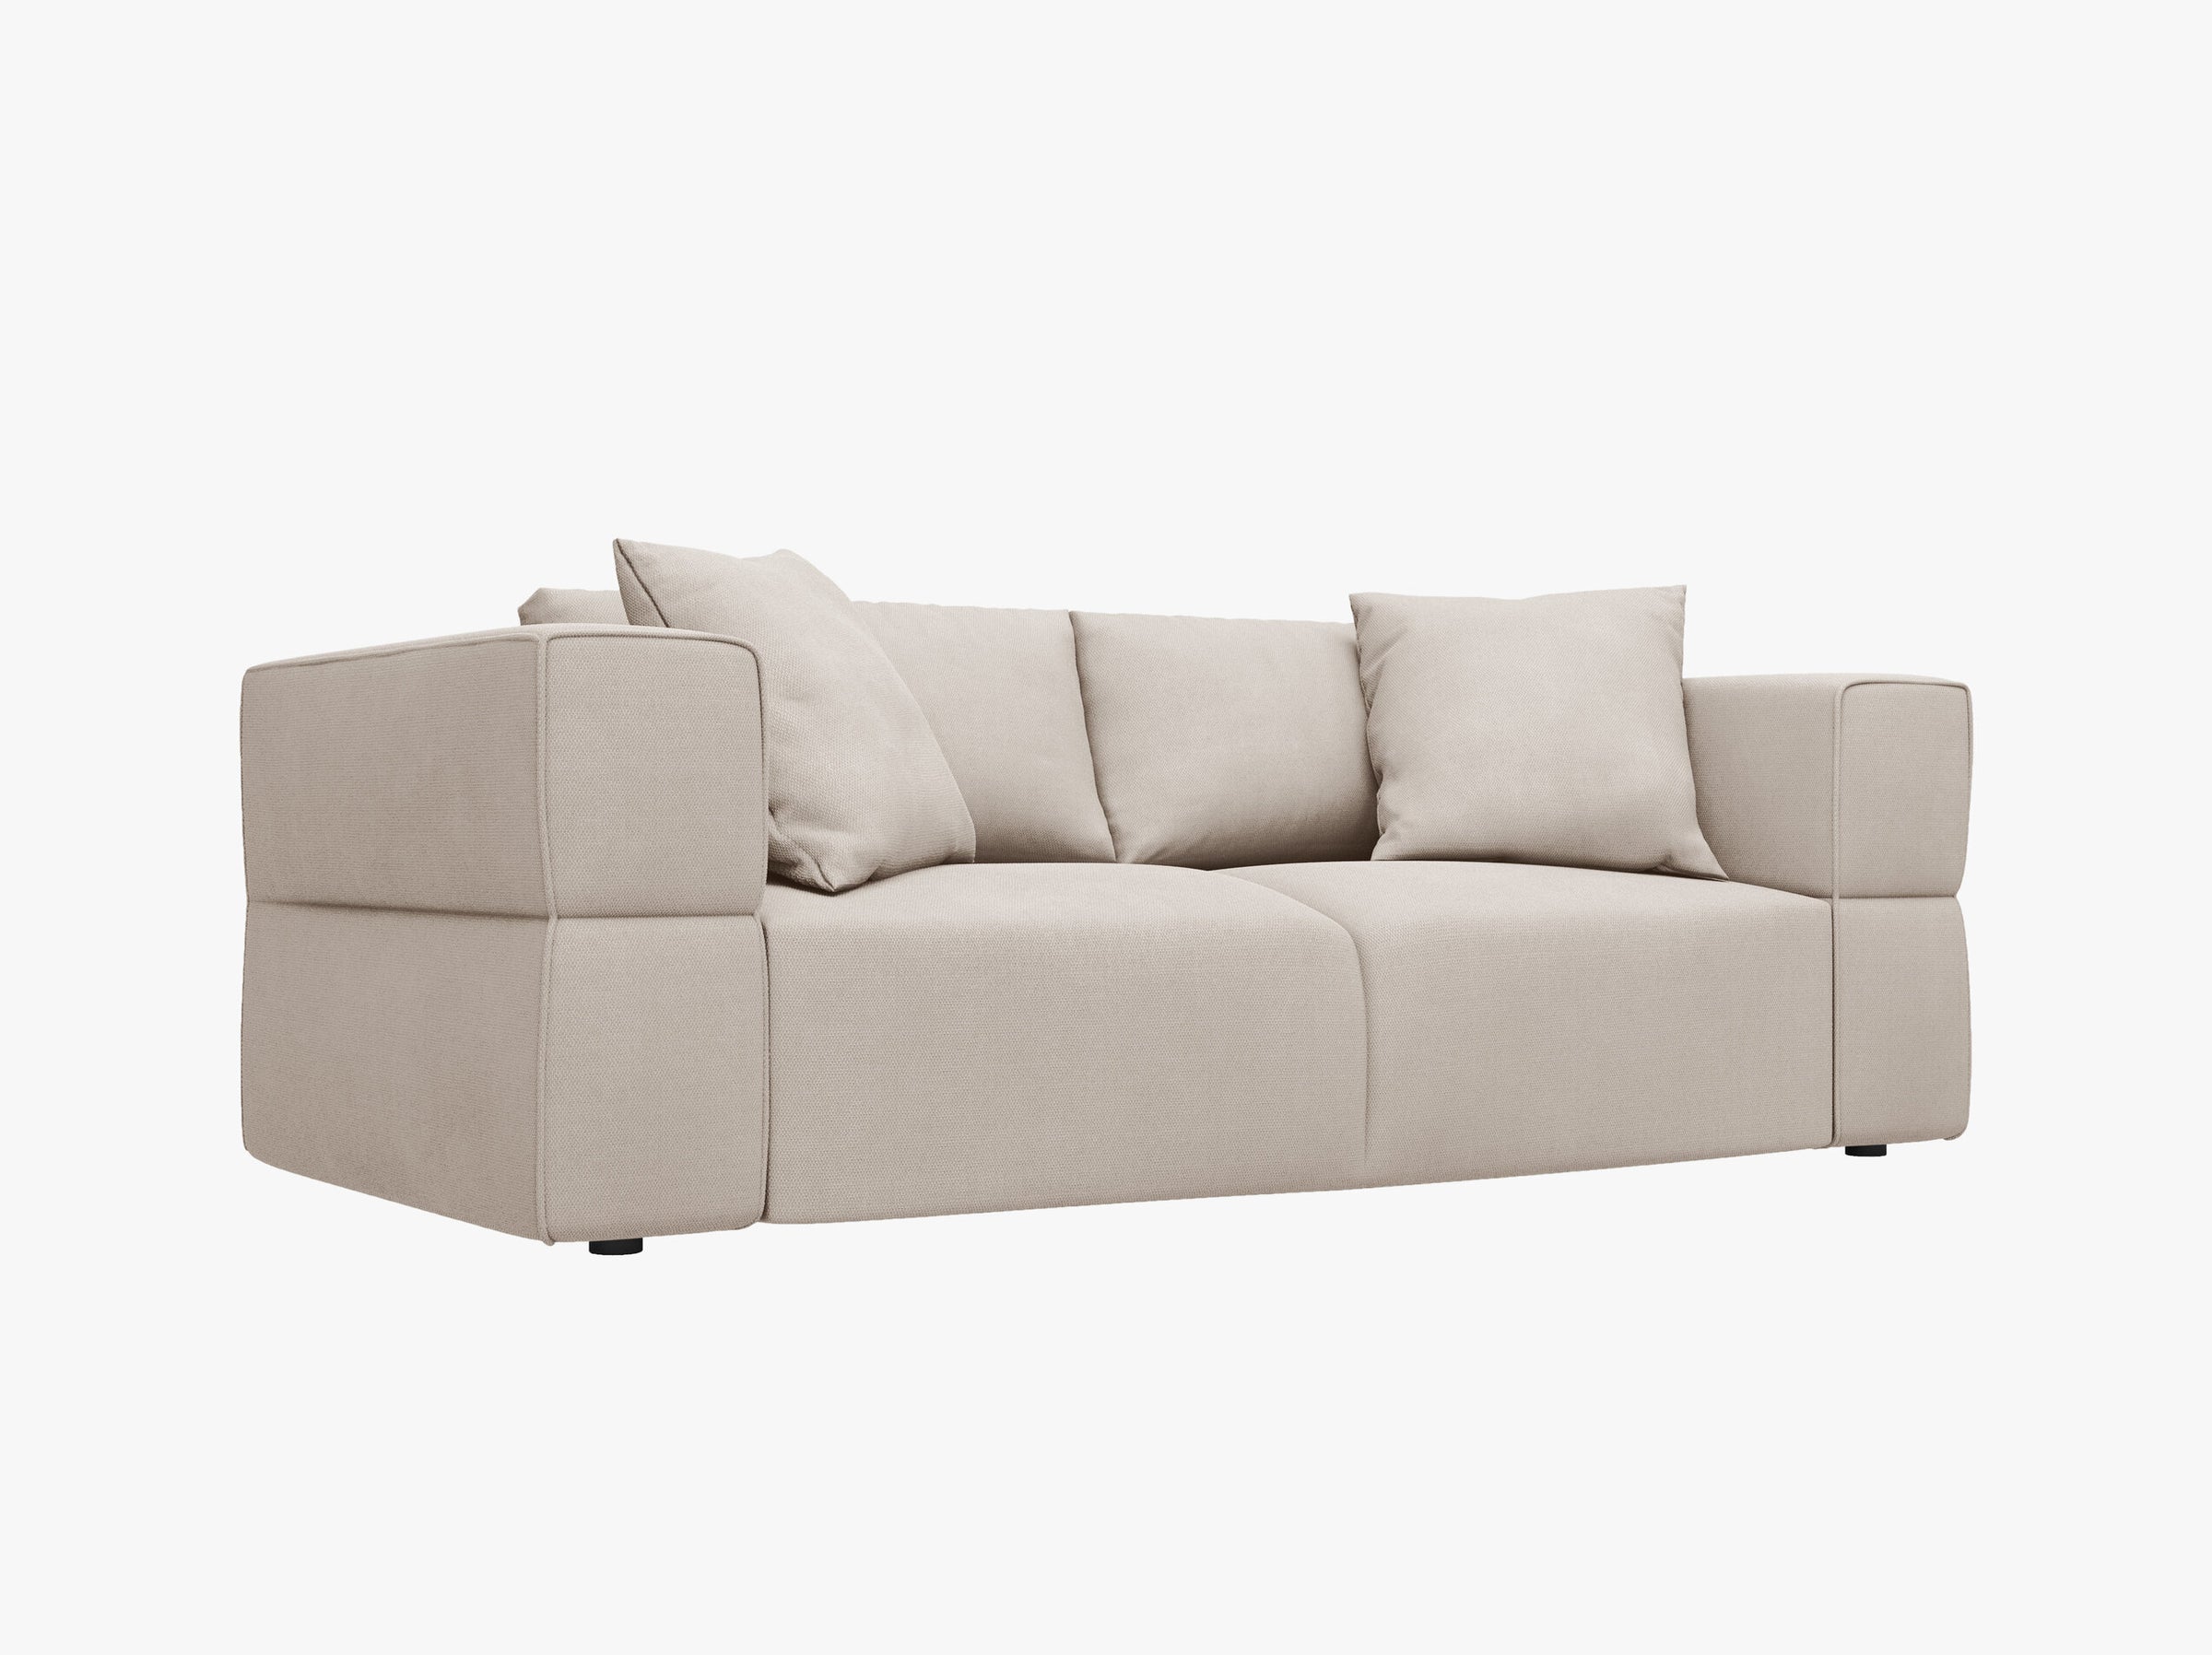 Tyra sofás tejido estructurado beige